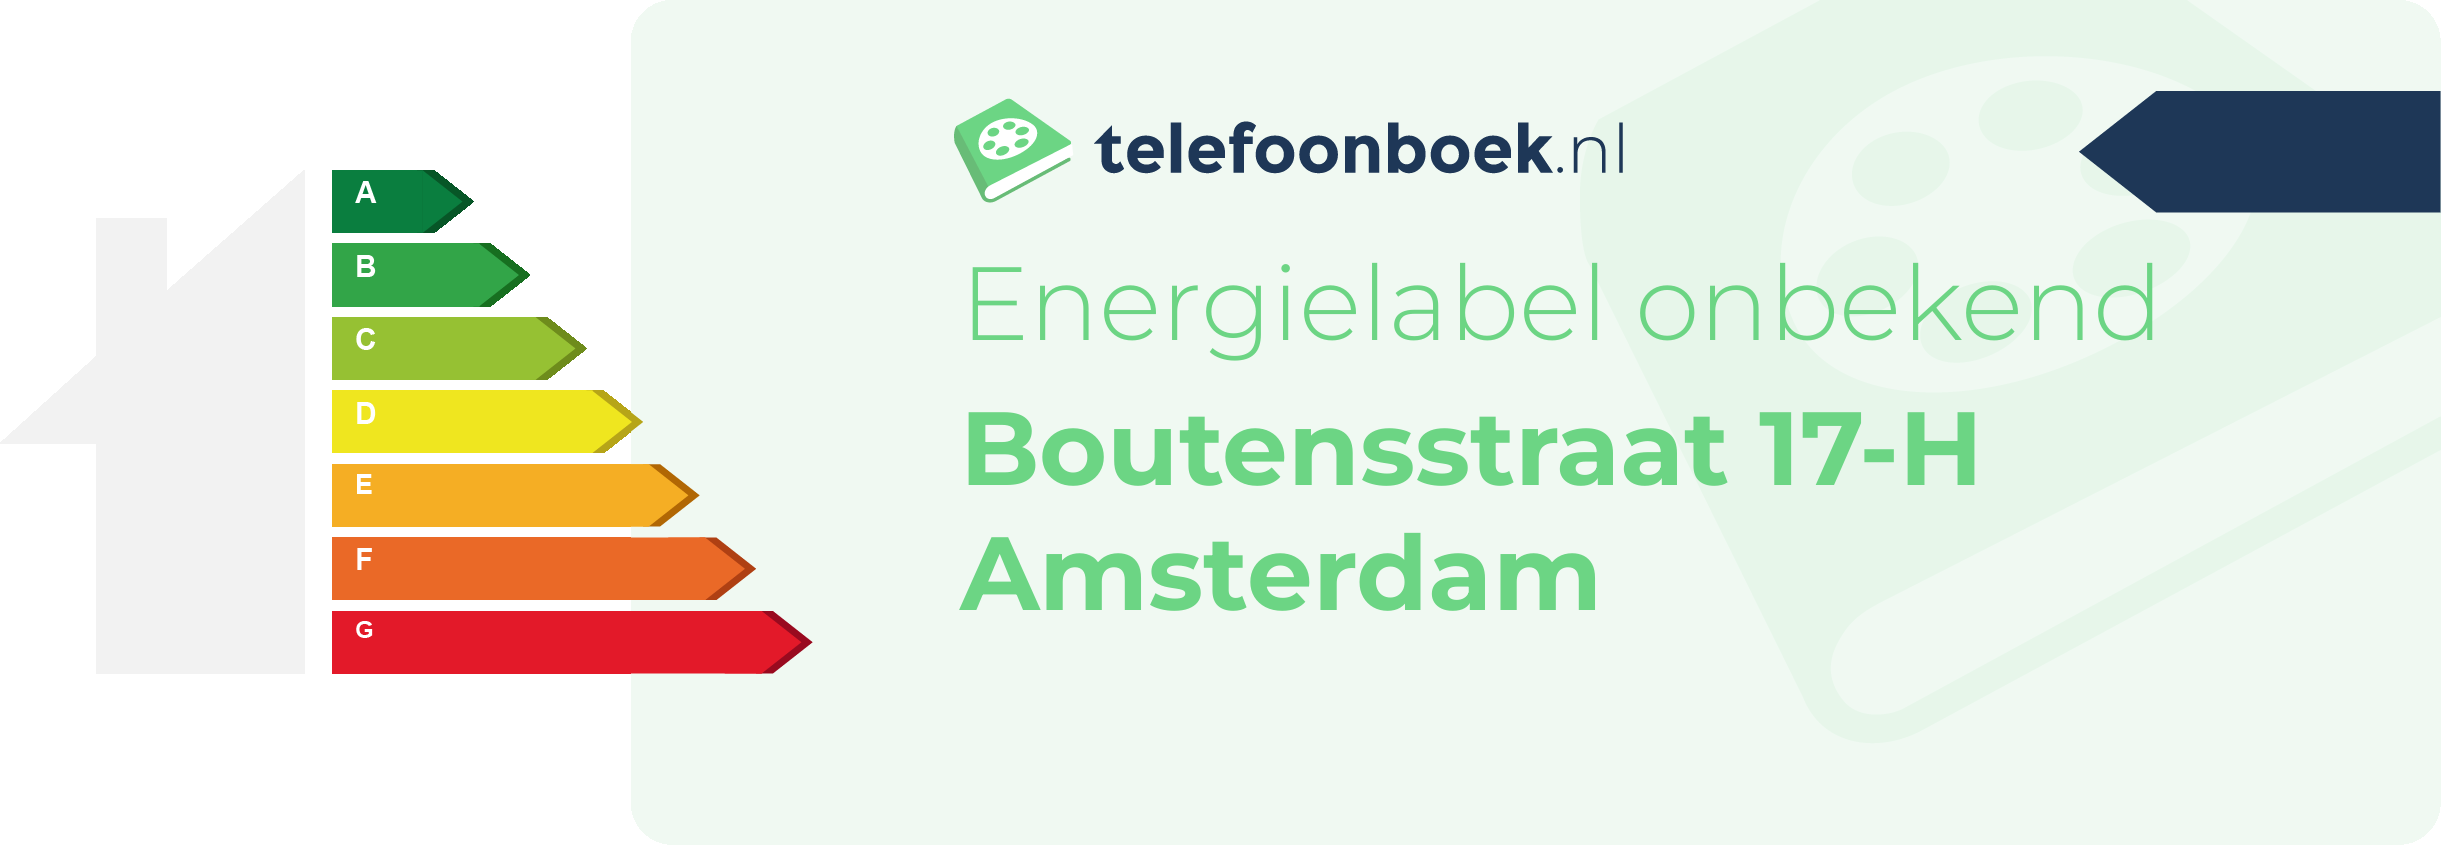 Energielabel Boutensstraat 17-H Amsterdam